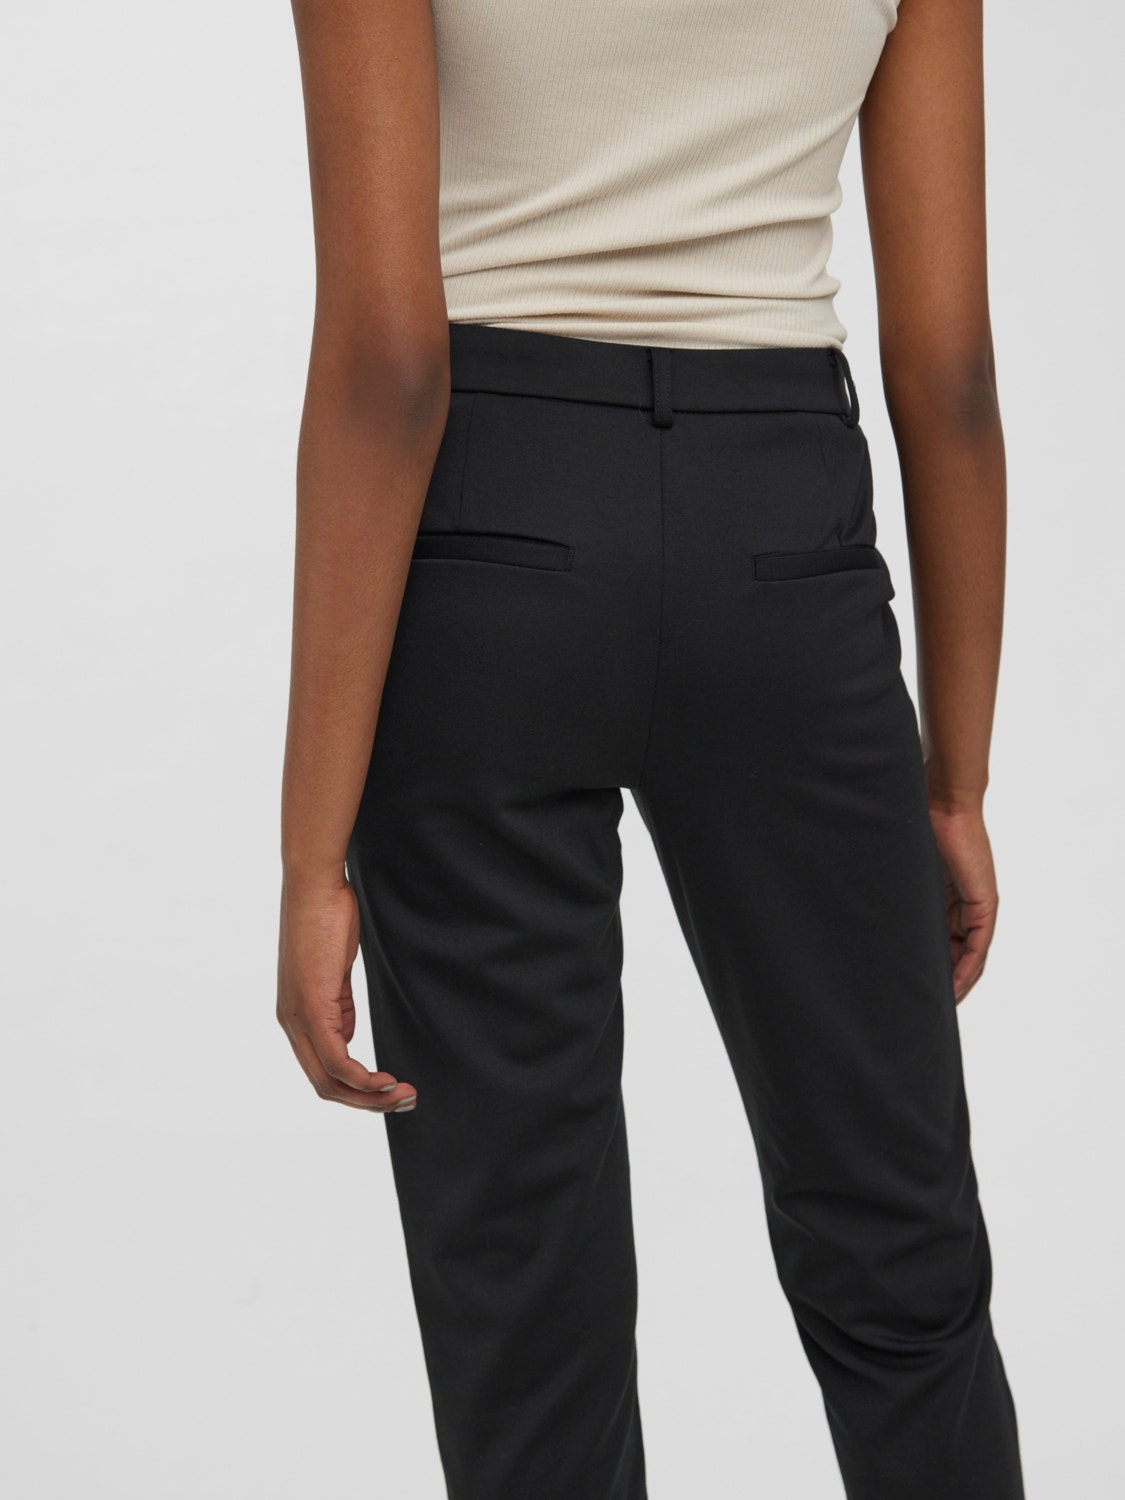 Vero Moda VMLUCCALILITH Trousers -Black - 10258104